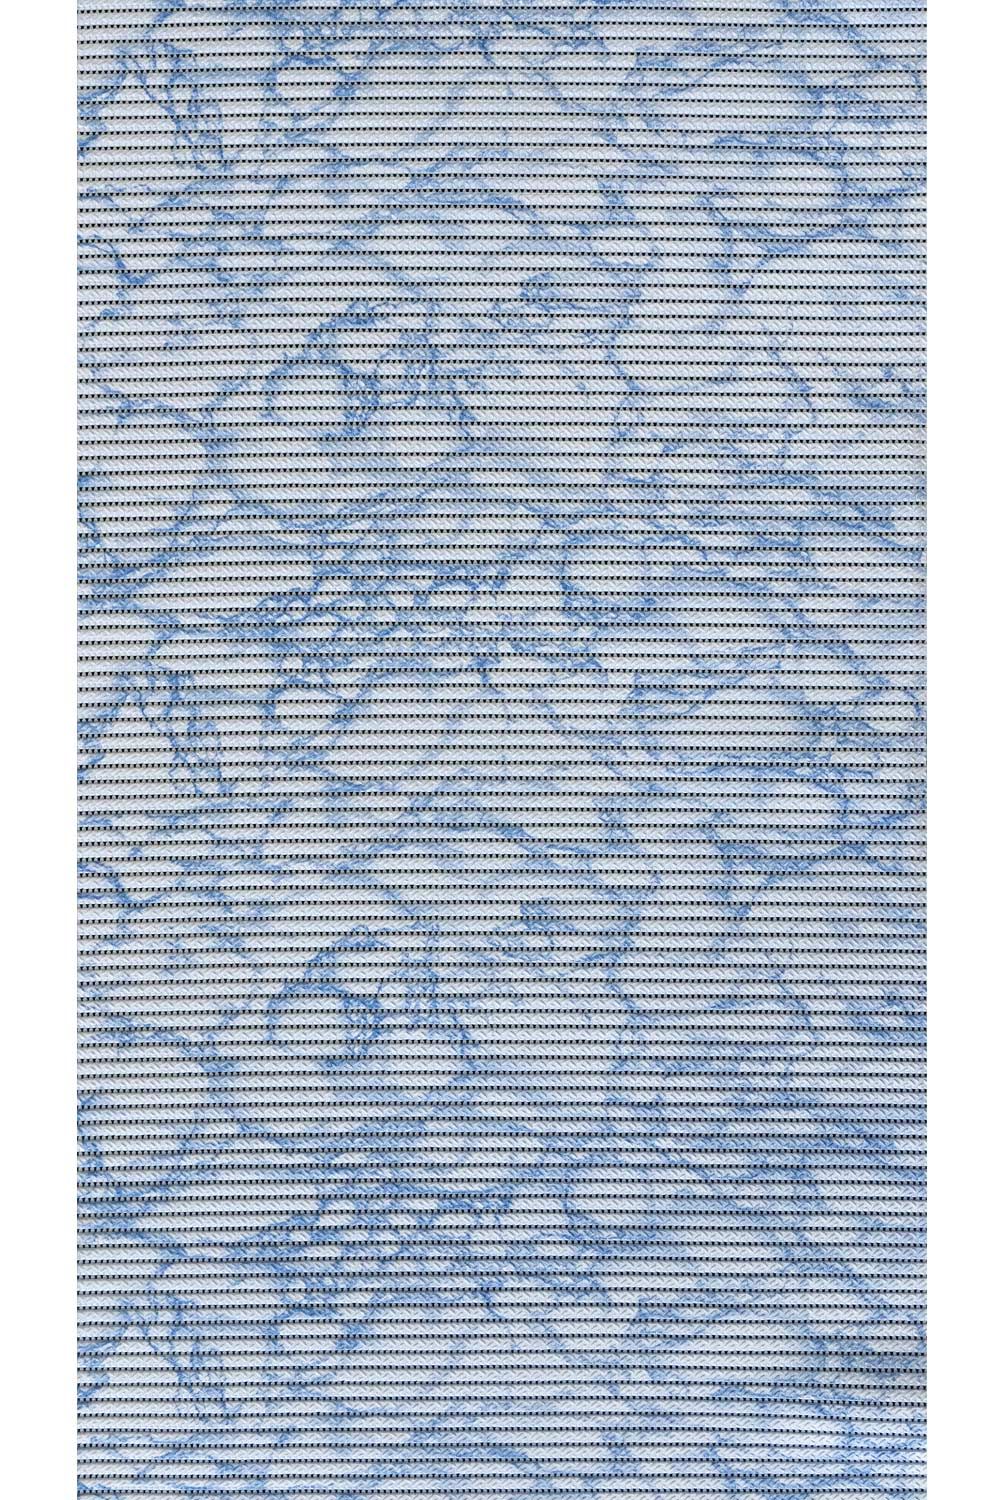 Penová predložka SYMPA-NOVA Comfortex 74311 65 cm